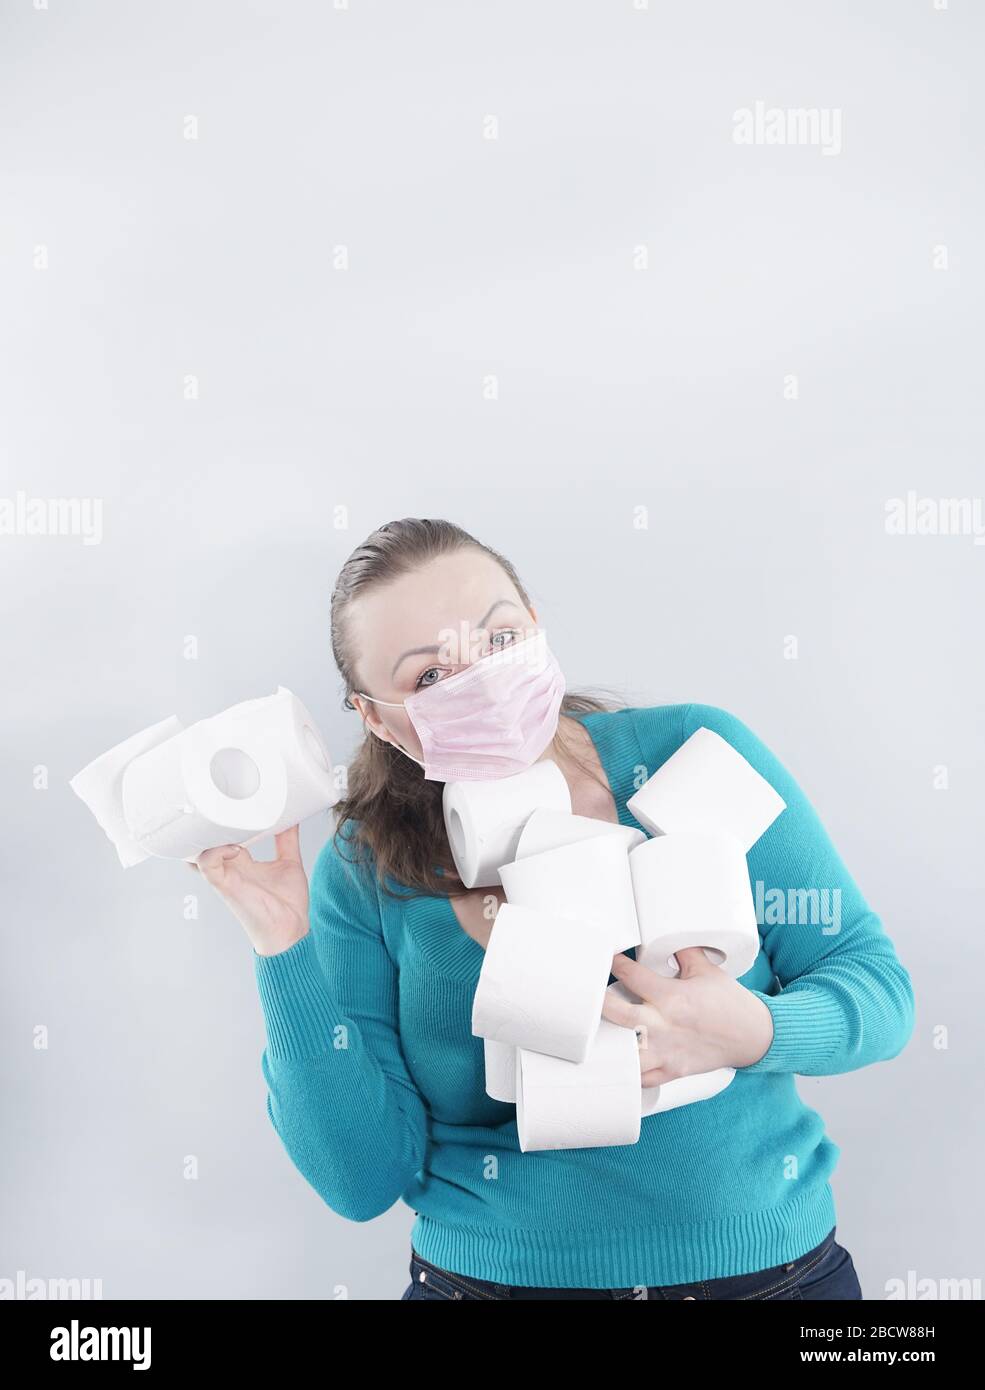 Una donna indossa una maschera facciale per la protezione dal virus Corona e si è rifornita di carta igienica in caso di quarantena. FEM di mezza età Foto Stock